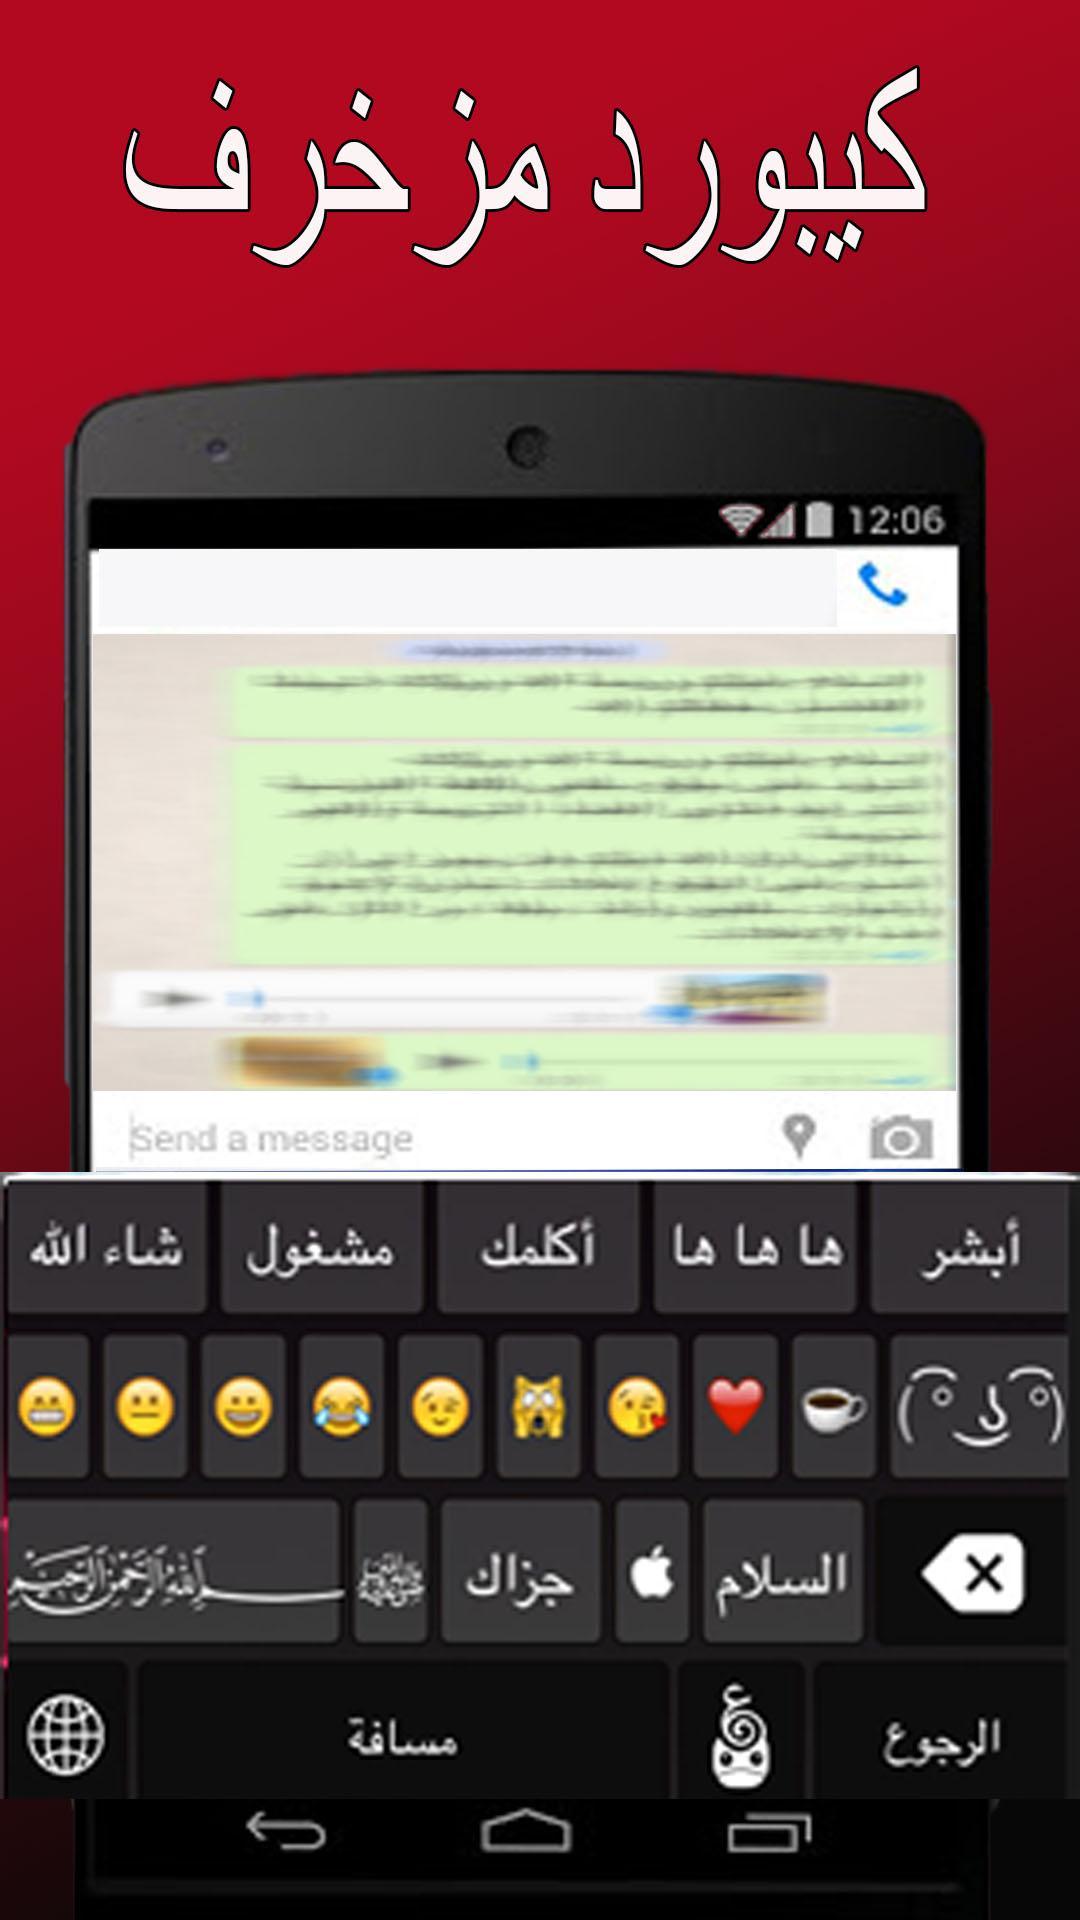 كيبورد مزخرف عربي وانجليزي for Android - APK Download